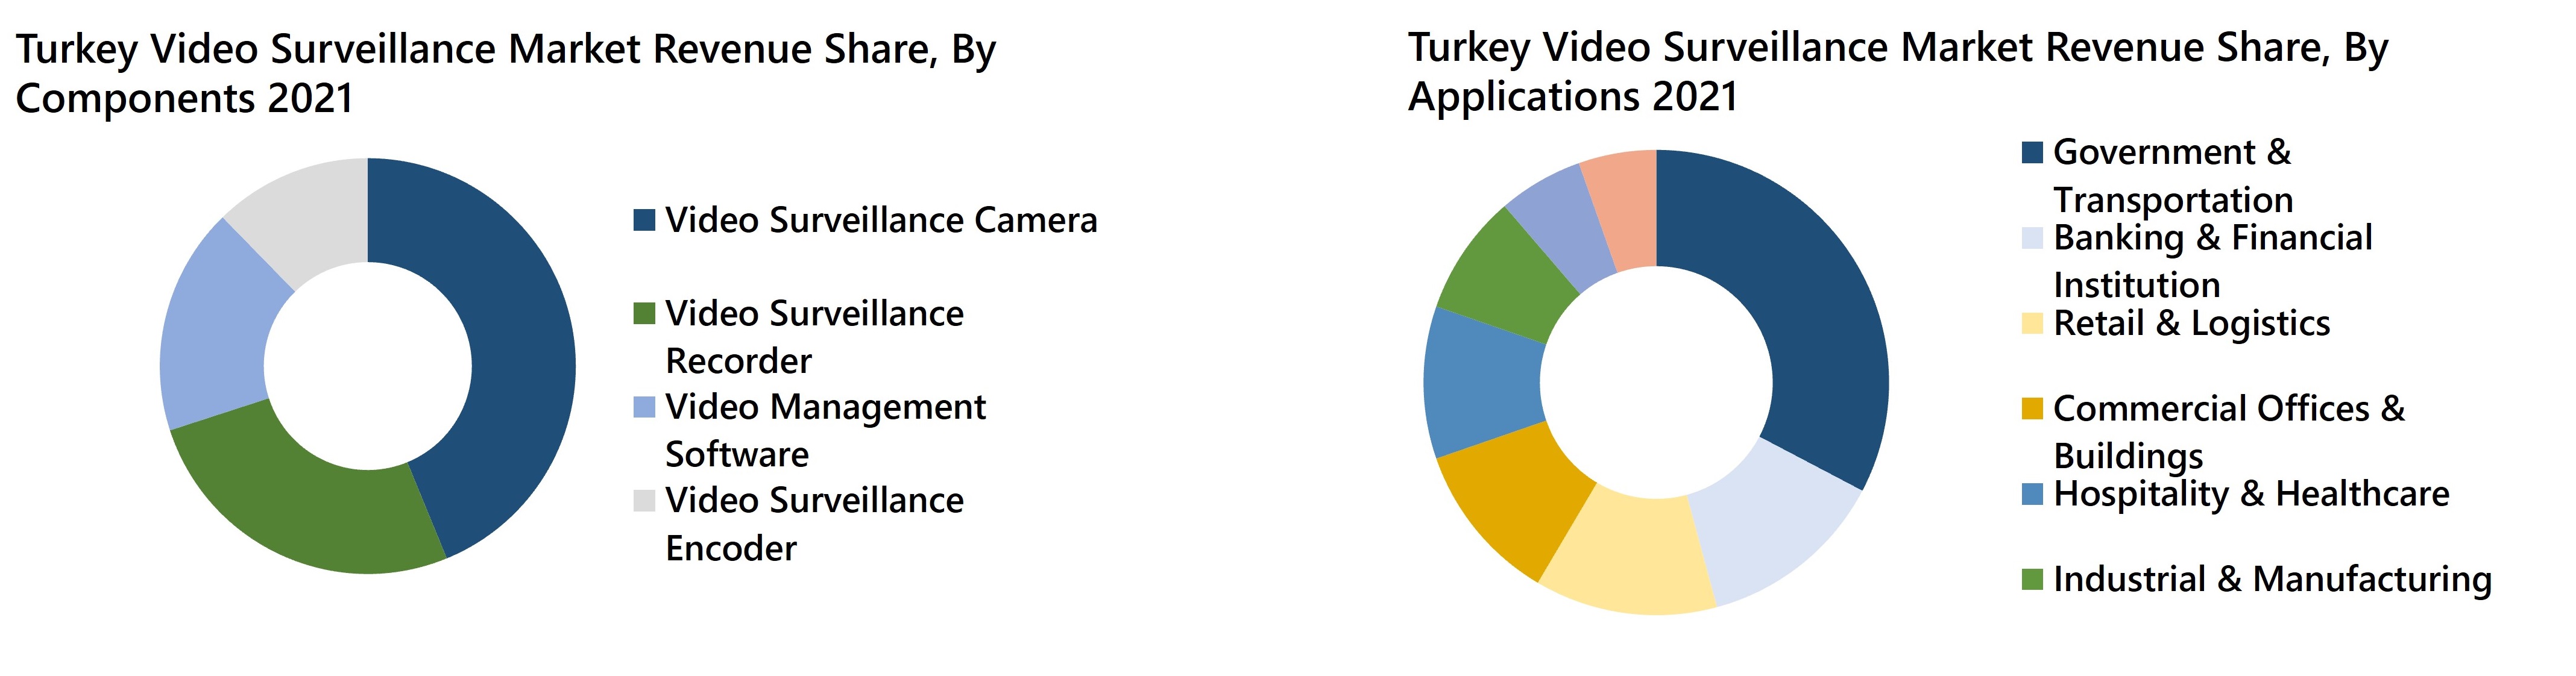 Turkey Video Surveillance Market Revenue Share